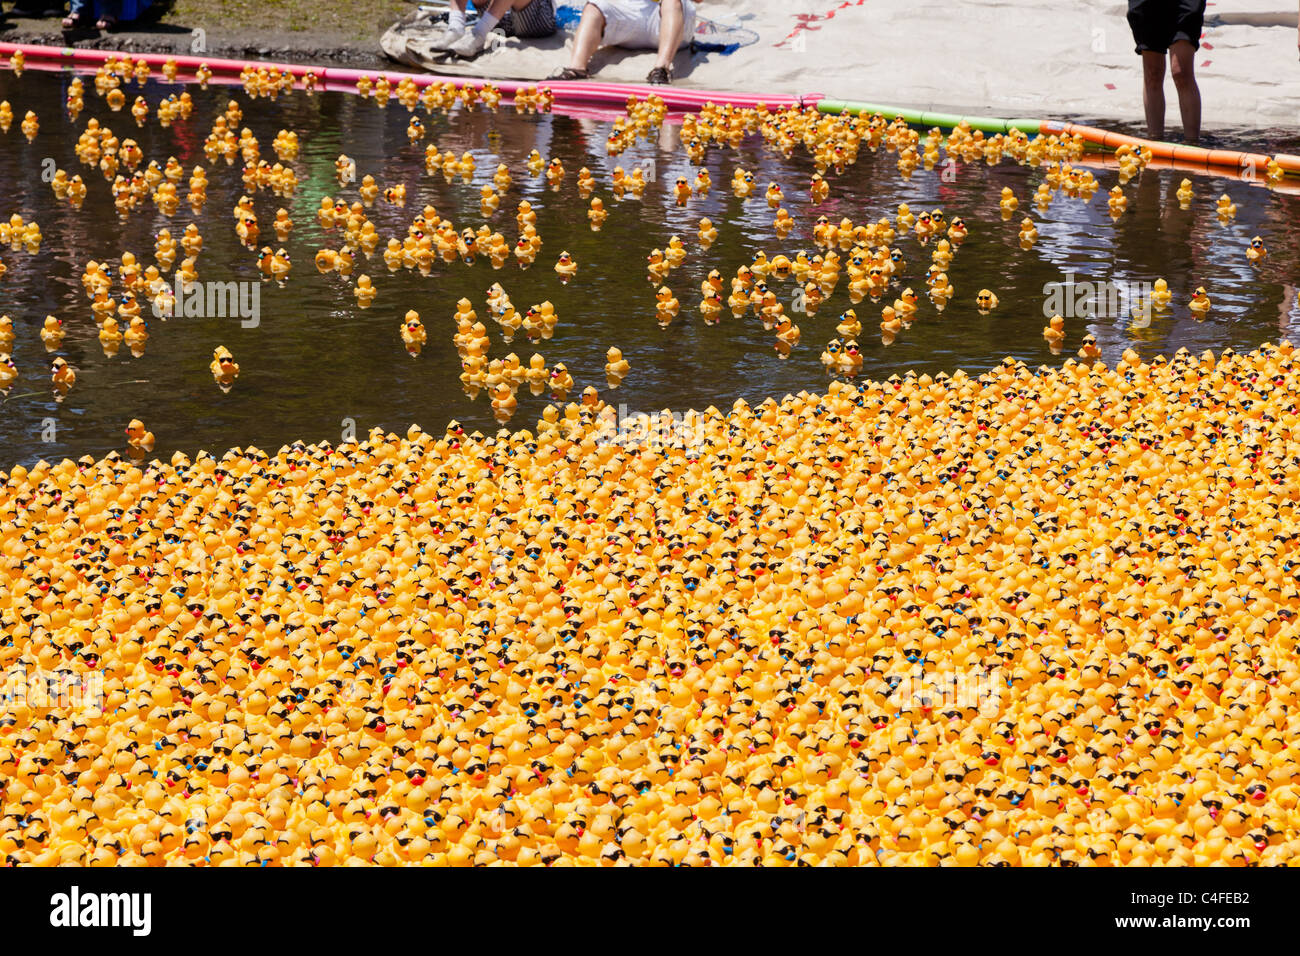 LOS GATOS, CA, USA - Juni 12: Die Quietscheentchen sind ihren Sommer bei der 4. jährlichen Silicon Valley Entenrennen in Vaso kicking off Stockfoto